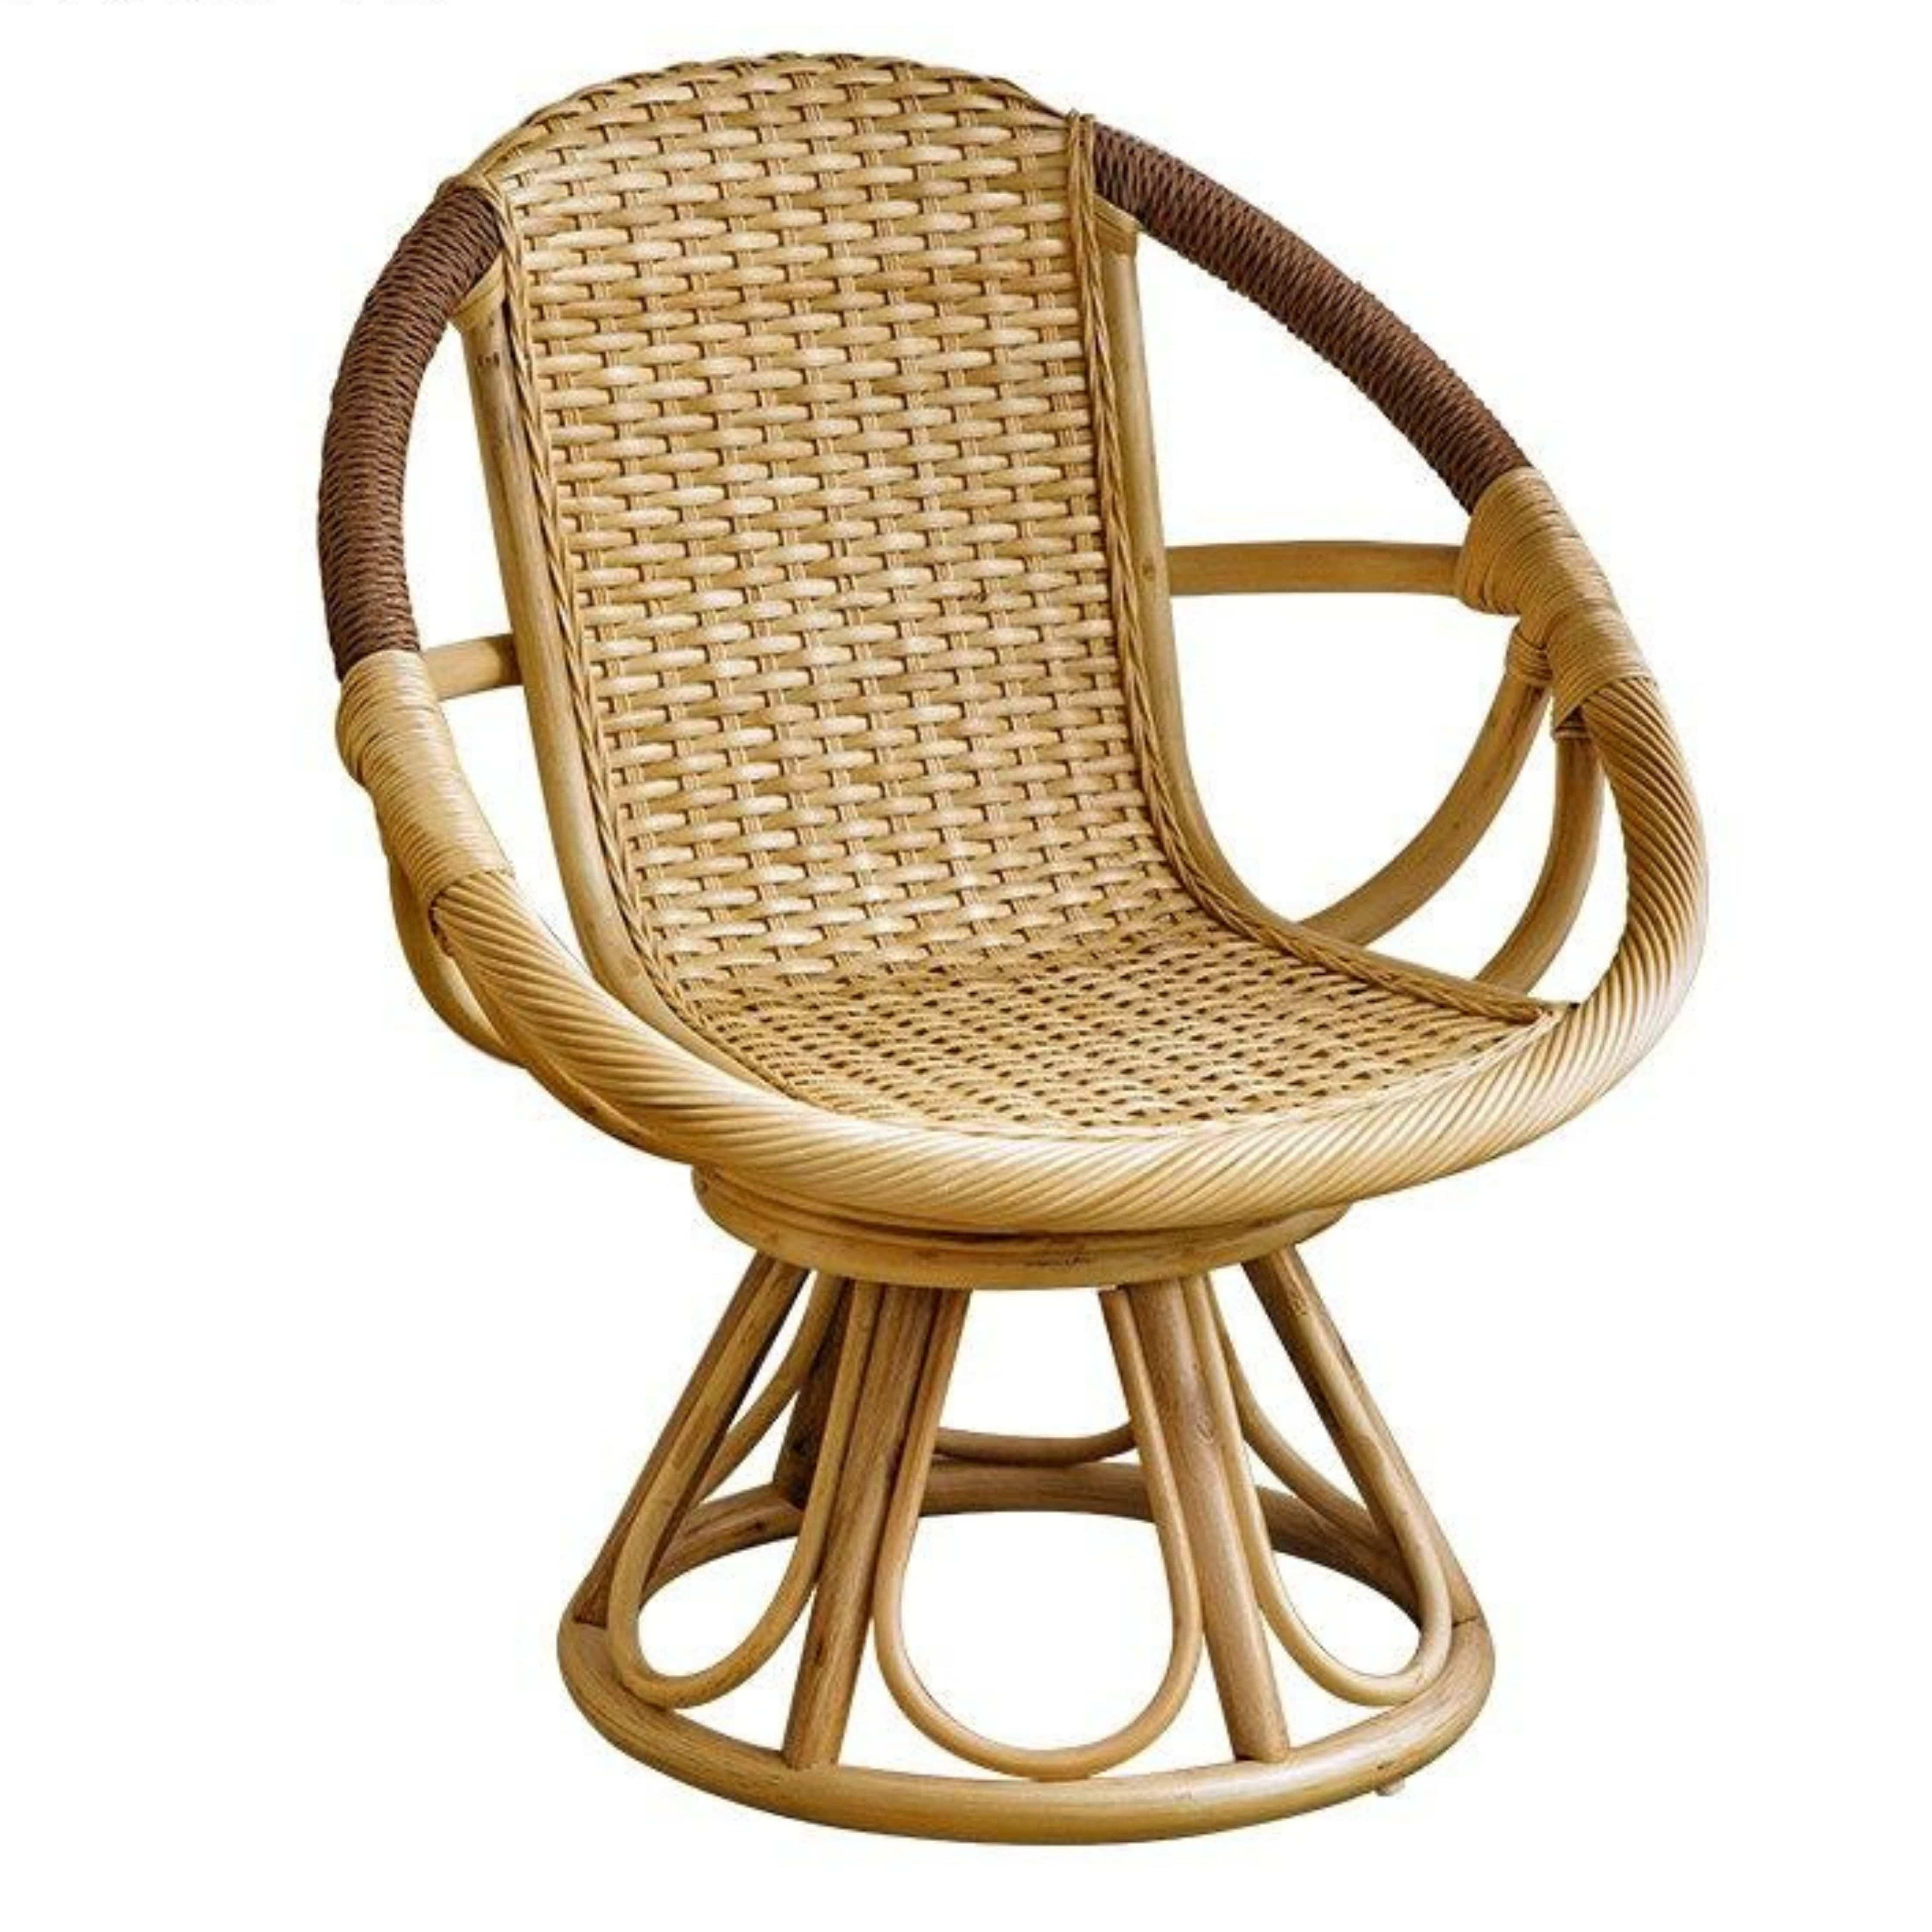 Shop 0 Chair B Pantheon Chair Mademoiselle Home Decor